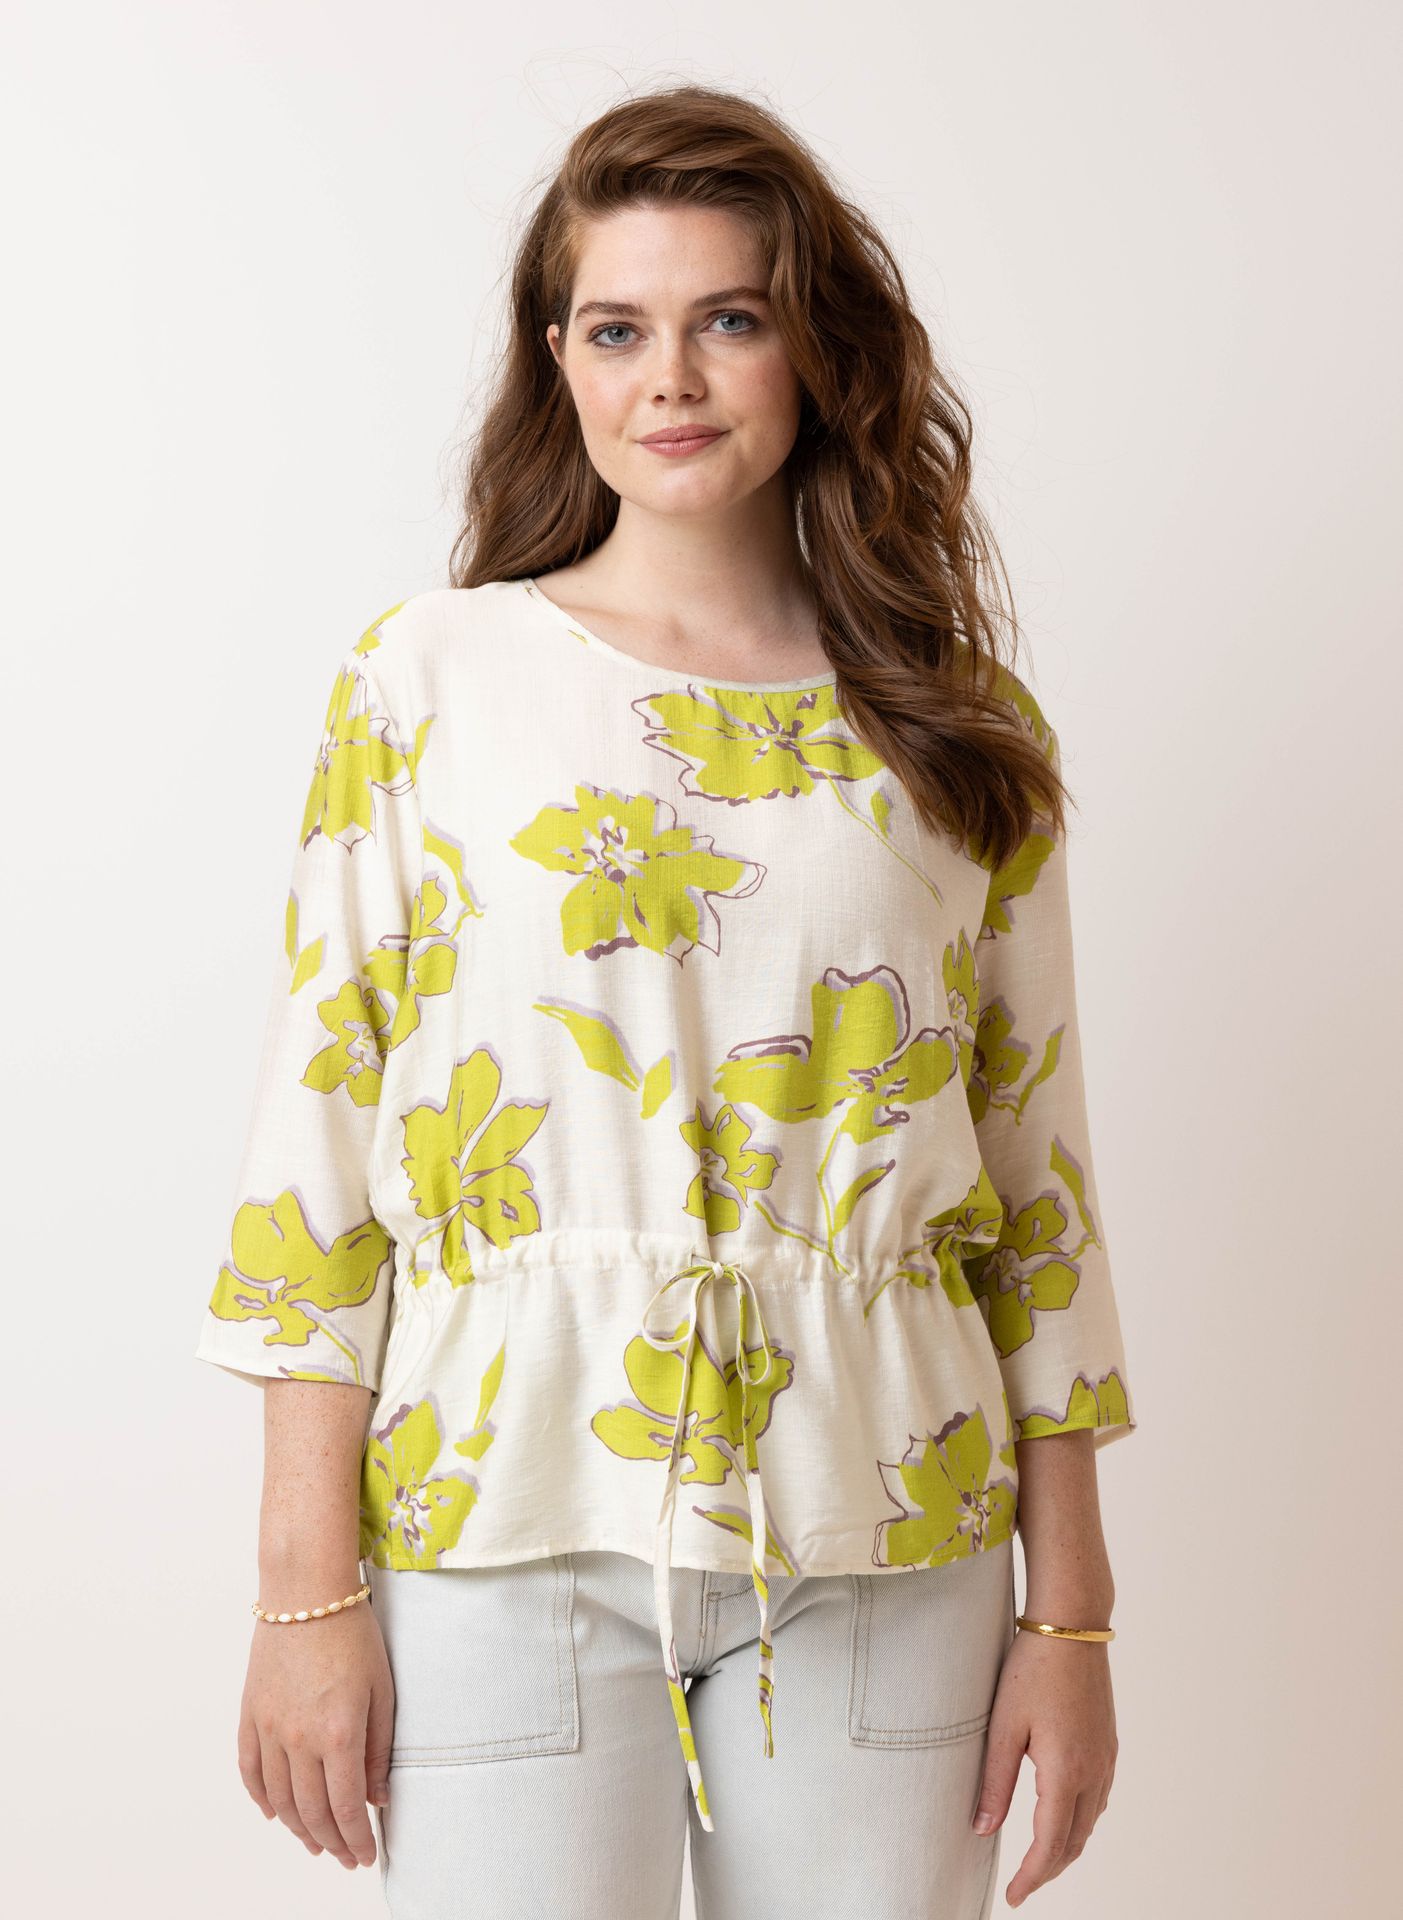  Bloemen blouse lime multicolor 214834-501-42